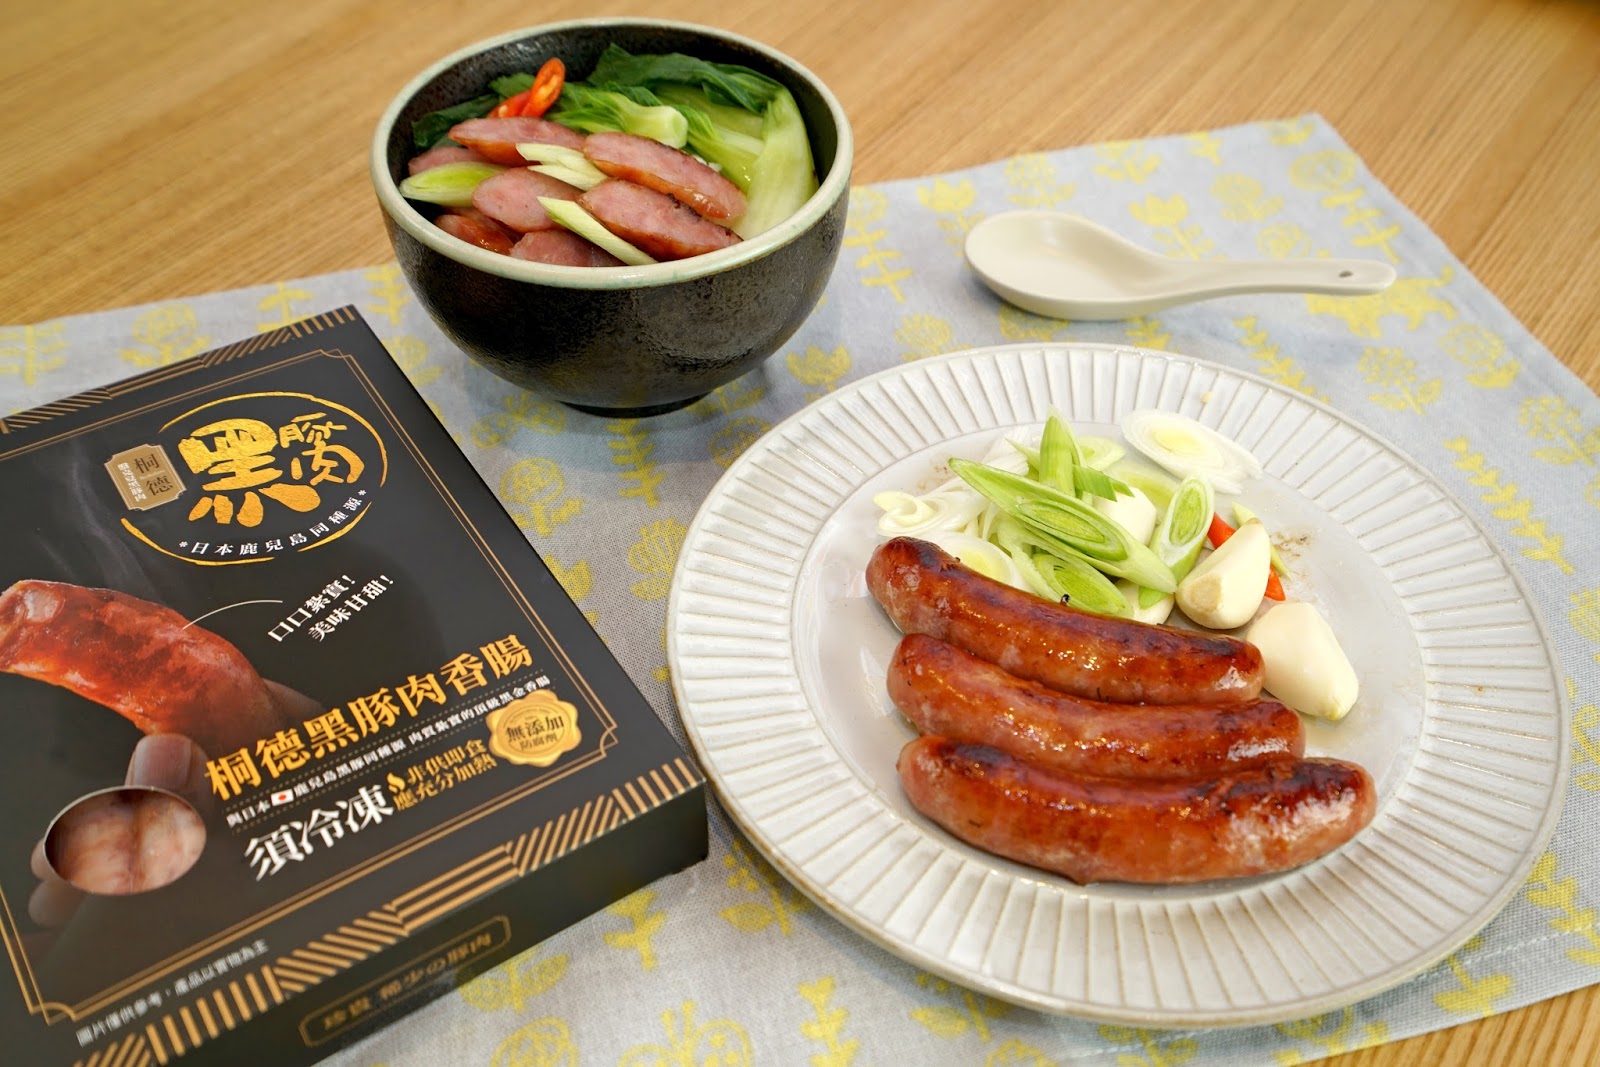 黑豚料理 あぢもり (鹿儿岛市/涮火锅) - GURUNAVI 日本美食餐厅指南